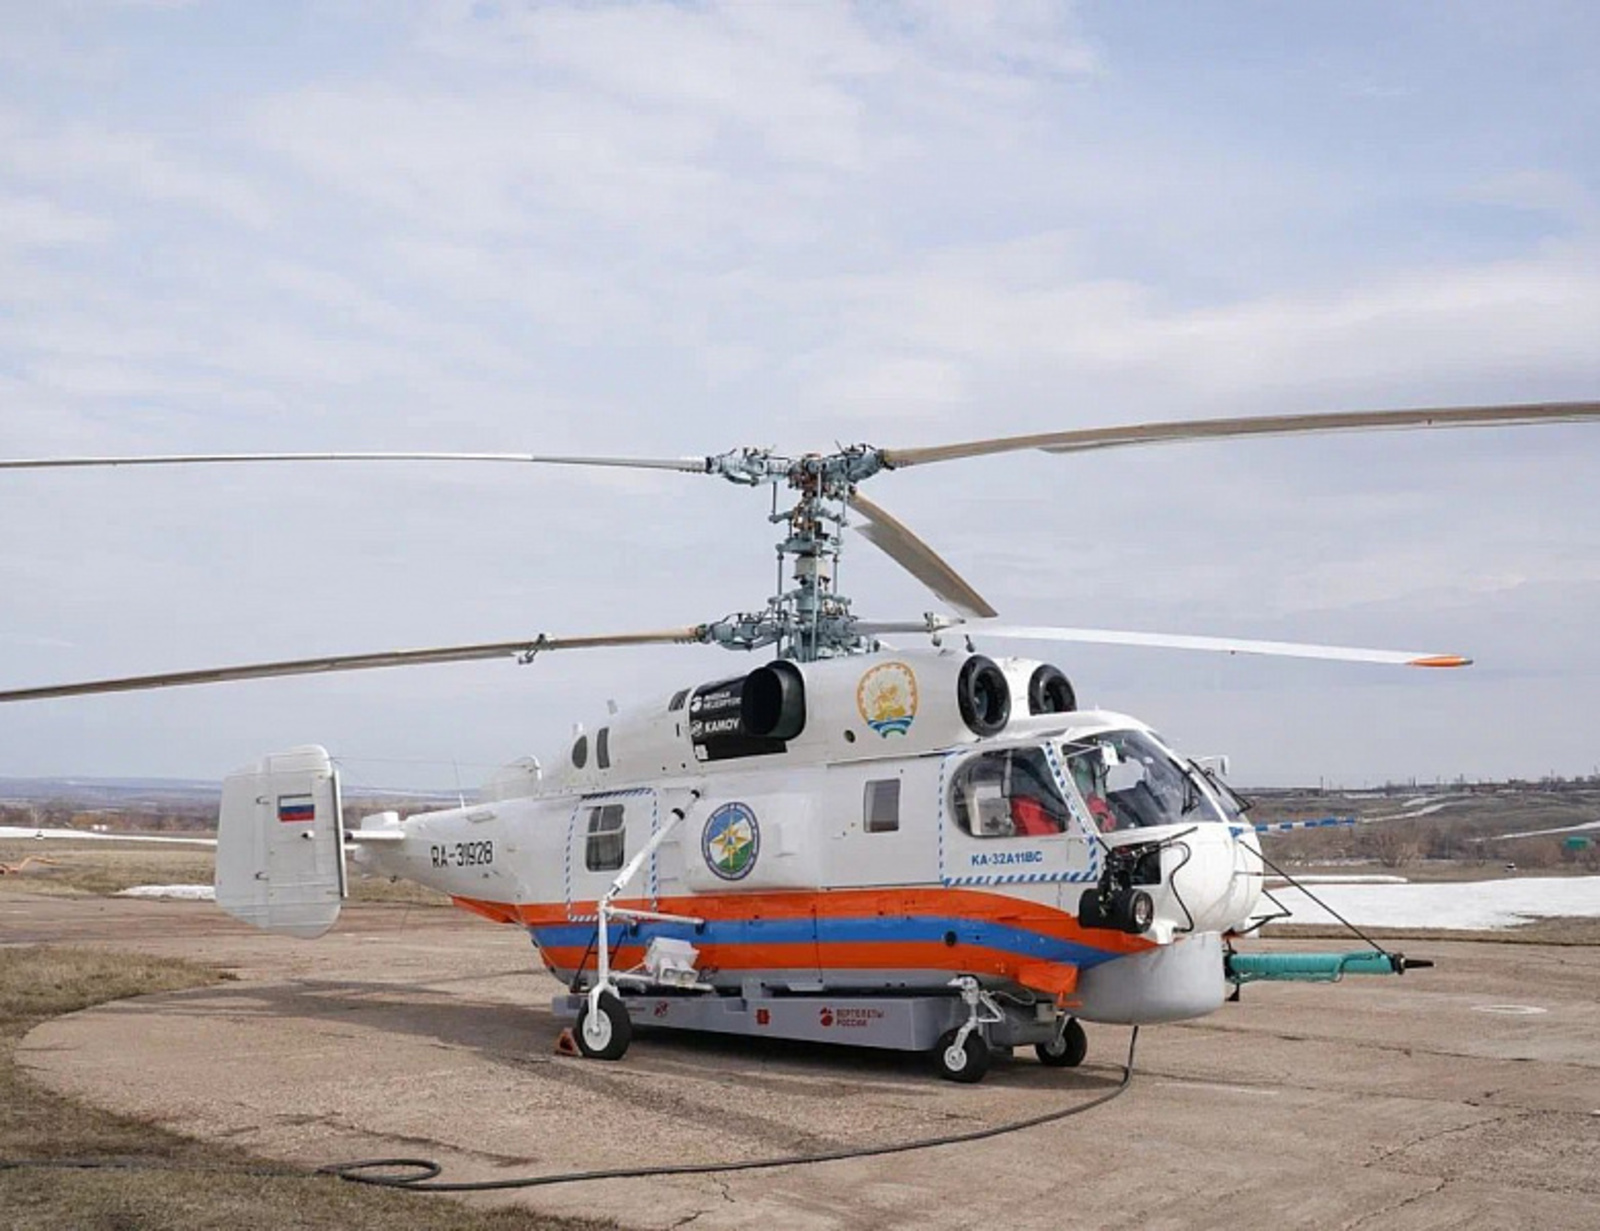 Башкирия получила новый пожарно-спасательный вертолёт Кa-32А11ВС